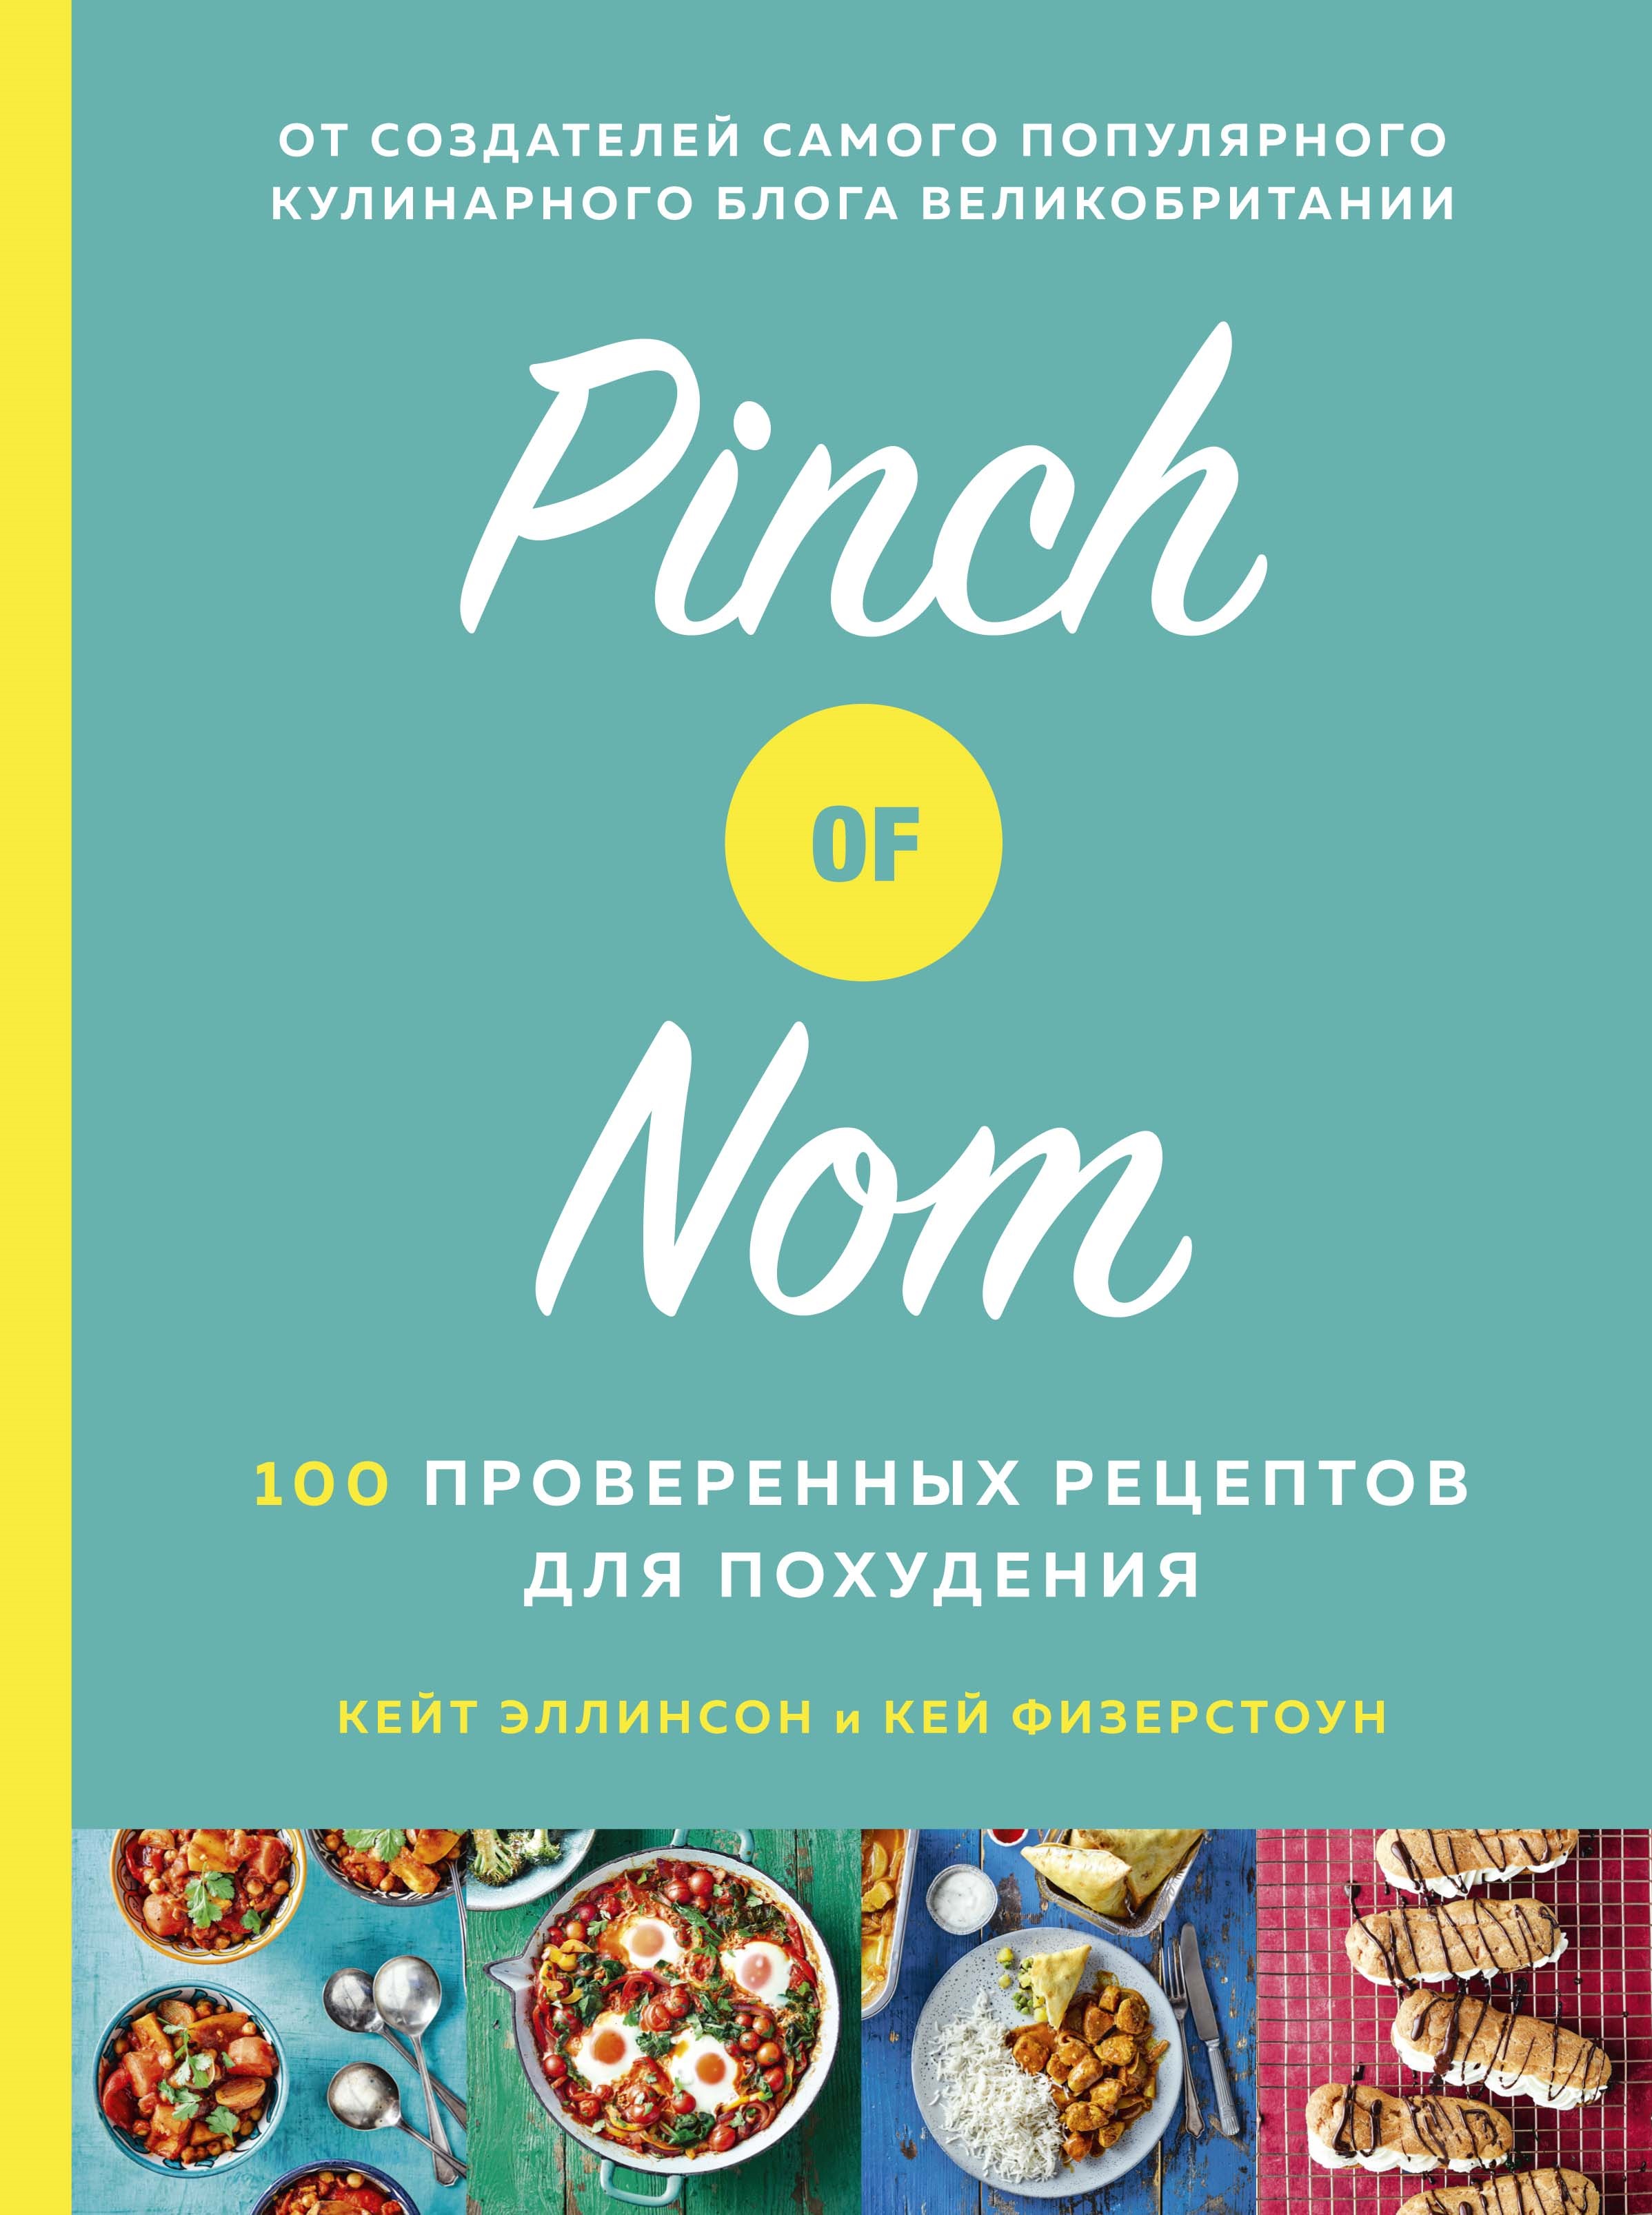 Физерстоун Кей Pinch of Nom: 100 проверенных рецептов для похудения allinson kate физерстоун кей pinch of nom 100 slimming home style recipes